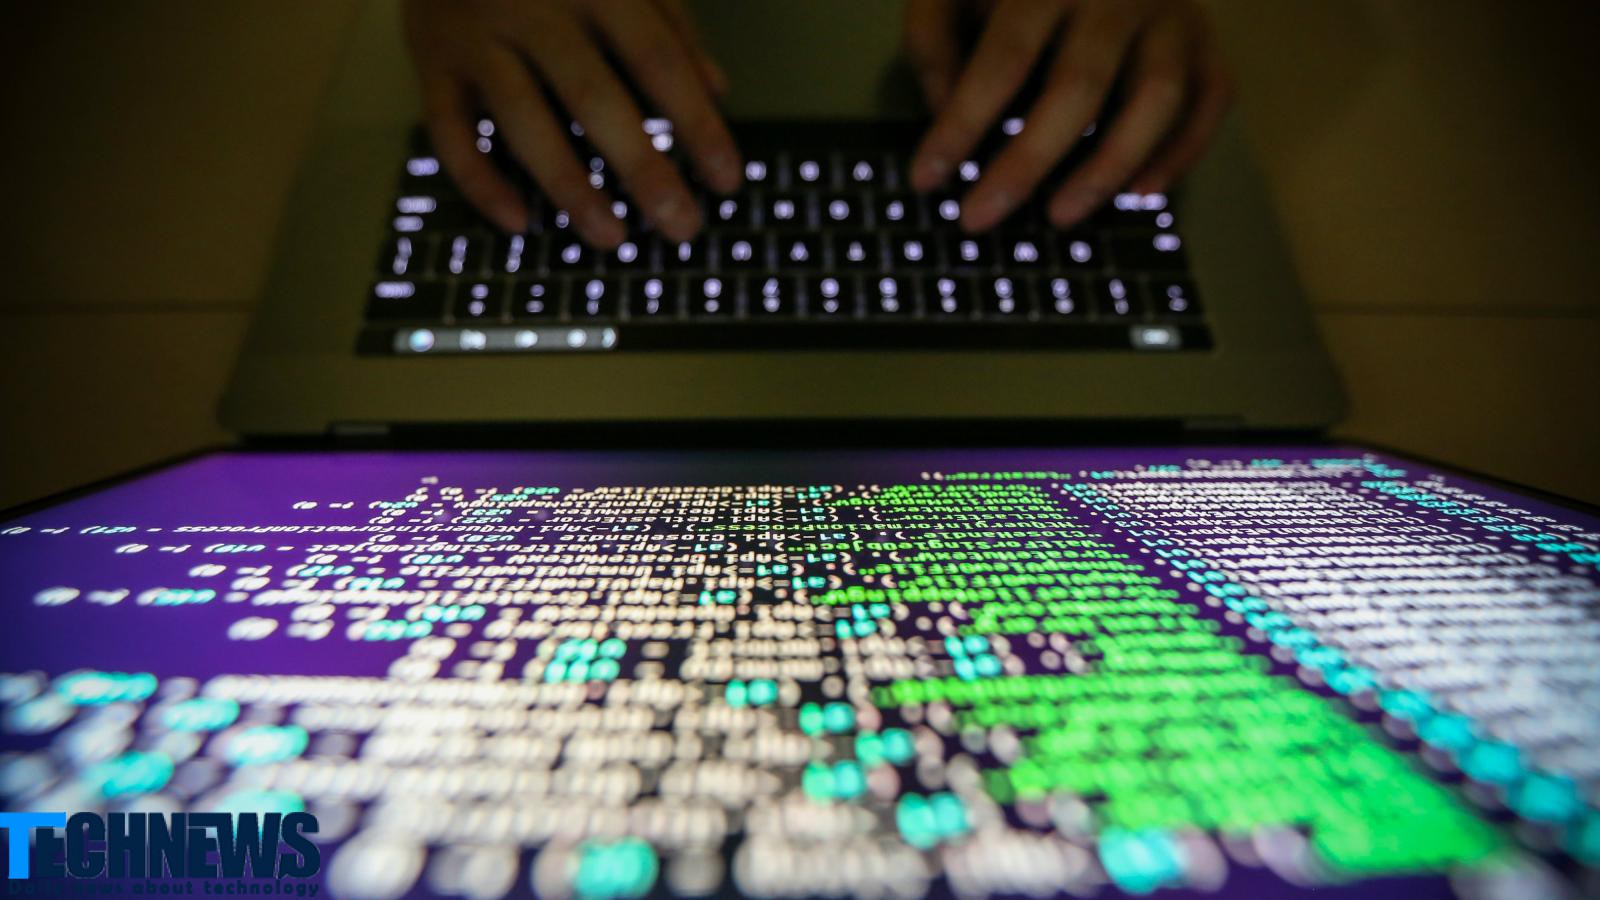 هکرها بیش از ۱۵ میلیارد اعتبارنامه سرقتی را در دارک وب به فروش می رسانند